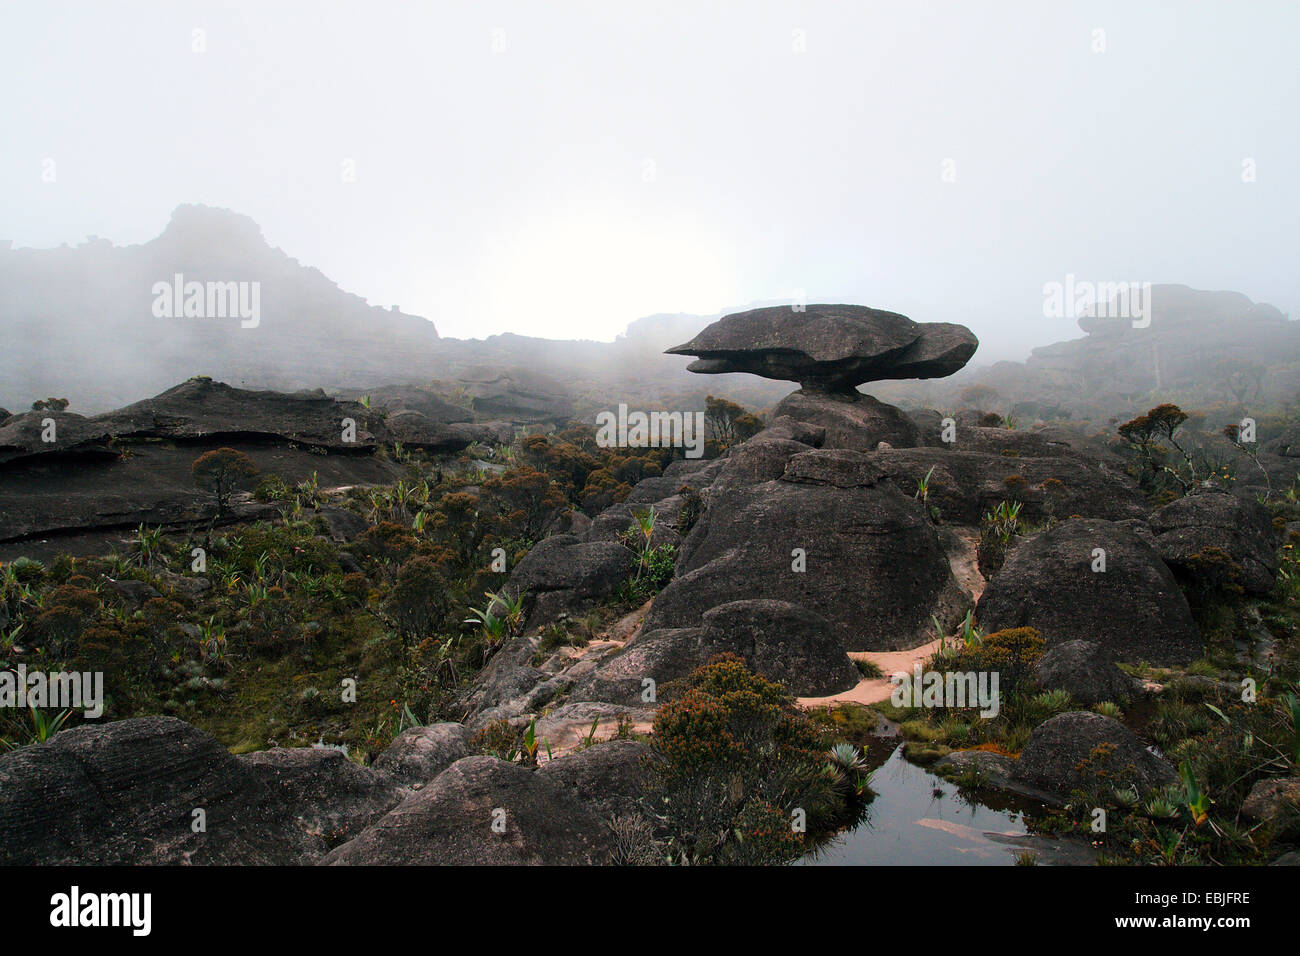 bizarr sandstone formation 'flying turtle' on Mount Roraima, Venezuela, Canaima National Park Stock Photo